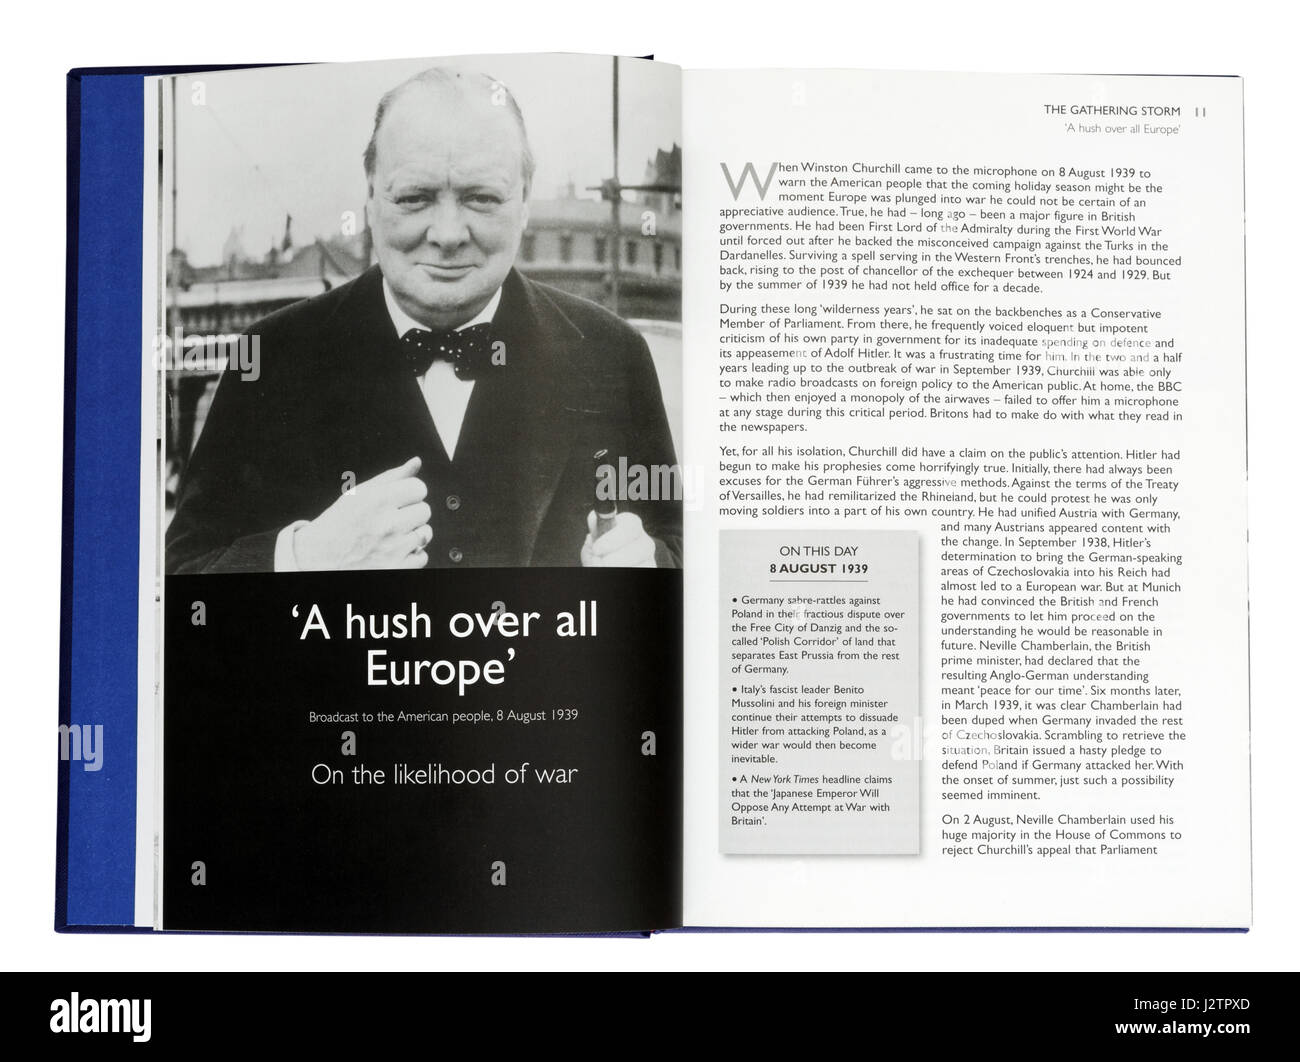 Un silenzio di tutta Europa - Discorso agli americani sulla probabilità di guerra : Pagina nel libro illustrato di Winston Churchill i famosi discorsi di guerra Foto Stock